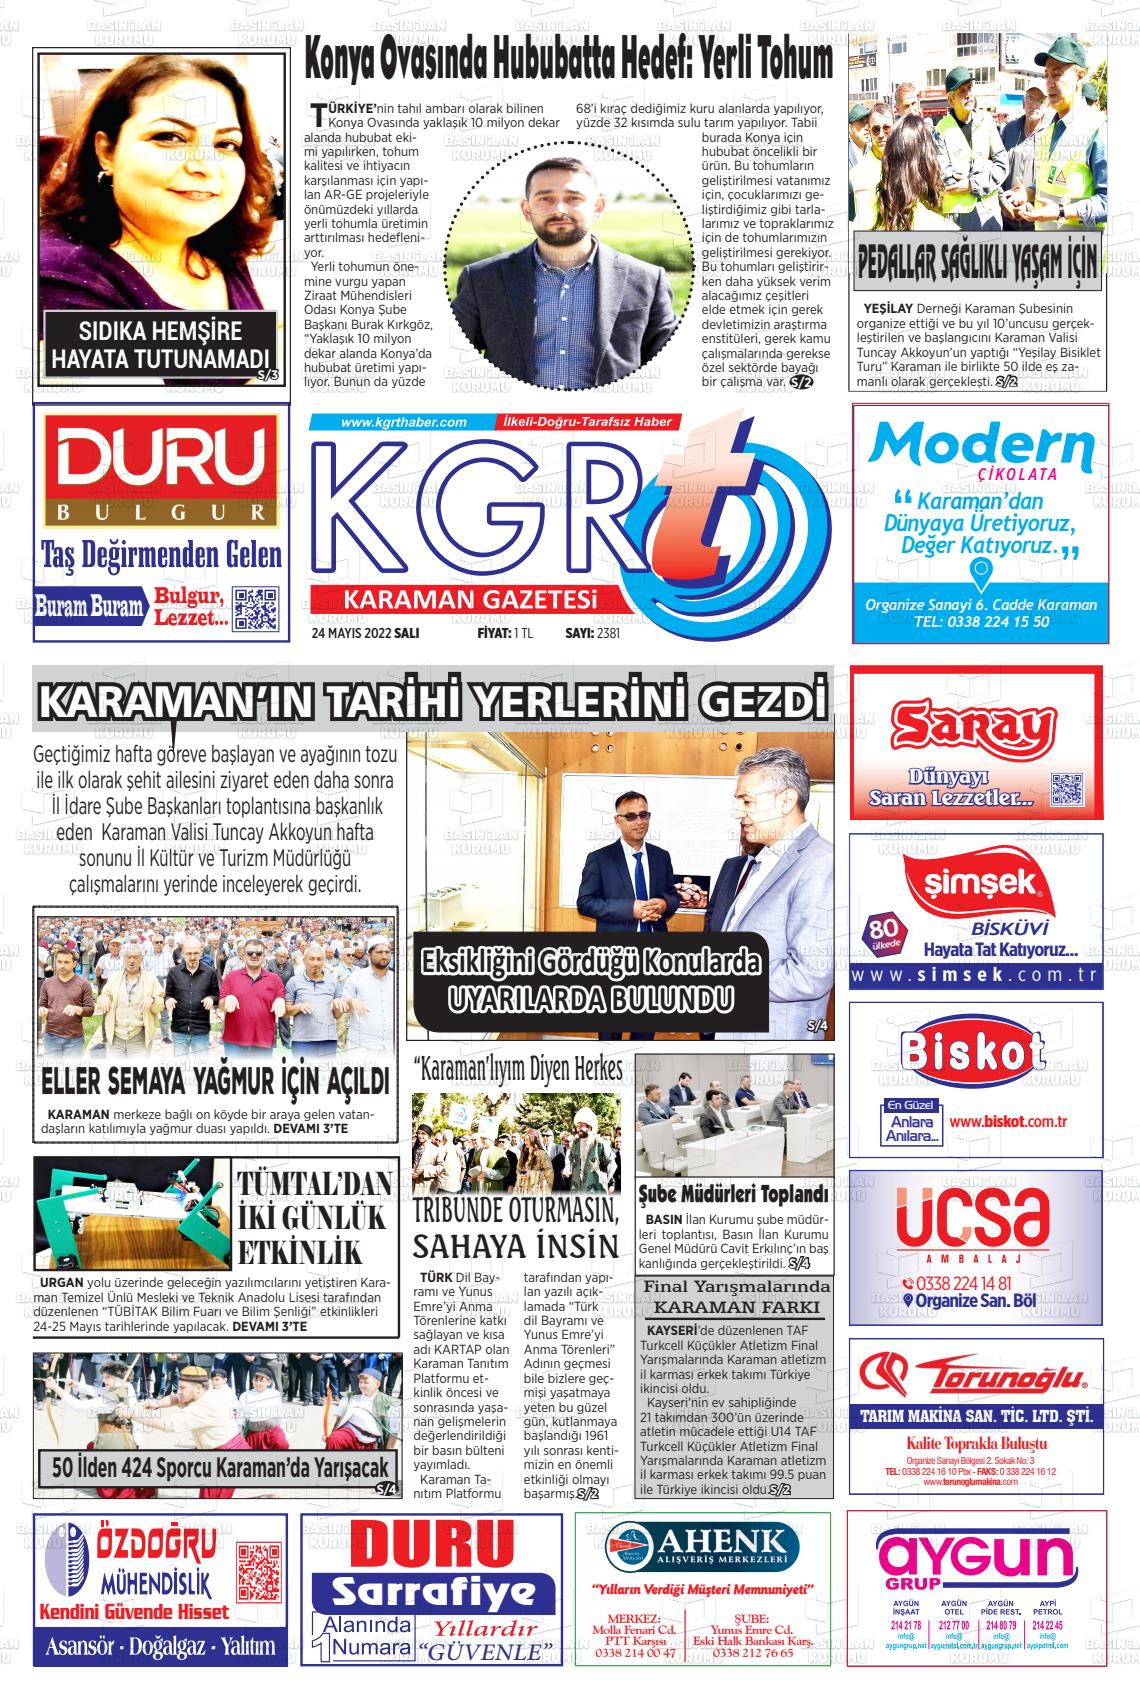 24 Mayıs 2022 Kgrt Karaman Gazete Manşeti